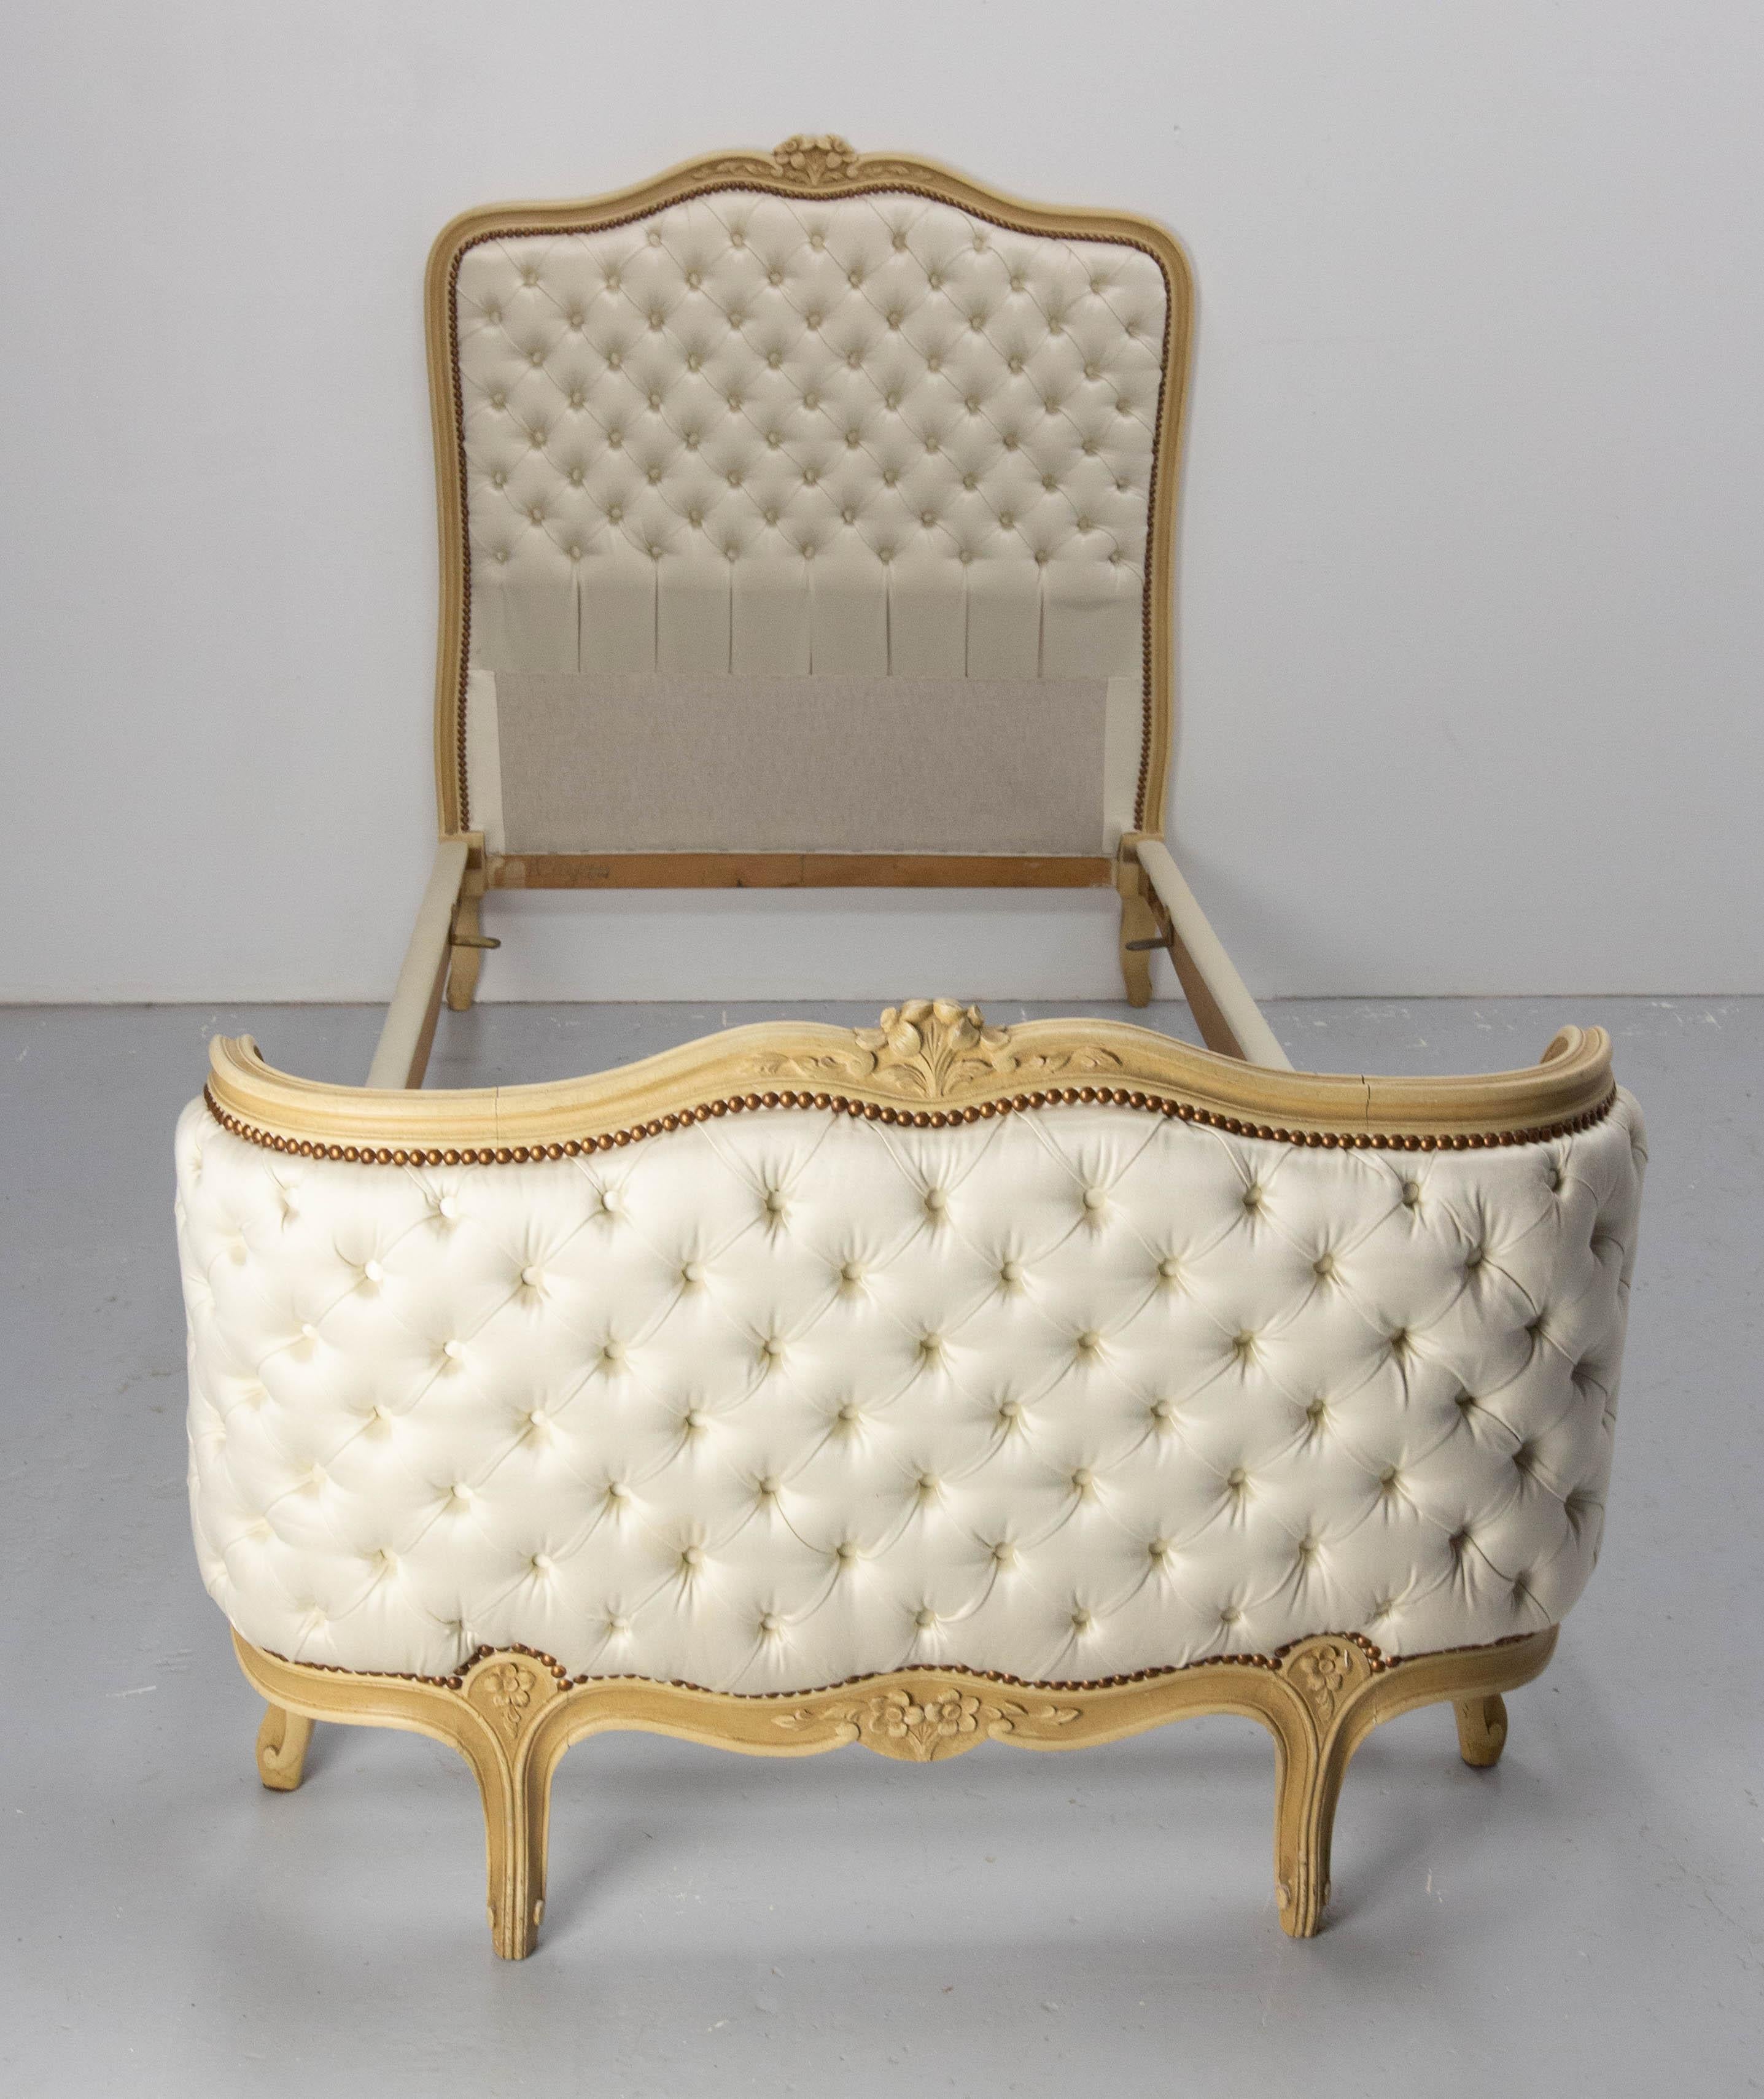 Antikes französisches Einzelbett, hergestellt um 1900
Louis XV-Stil und gepolstert, mit einem ecrufarbenen Stoff.
Dieses Bett wurde sehr wenig benutzt, so dass der Stoff ist sehr sauber, wie neu (es wurde vor ein paar Jahren neu gemacht), ein sehr